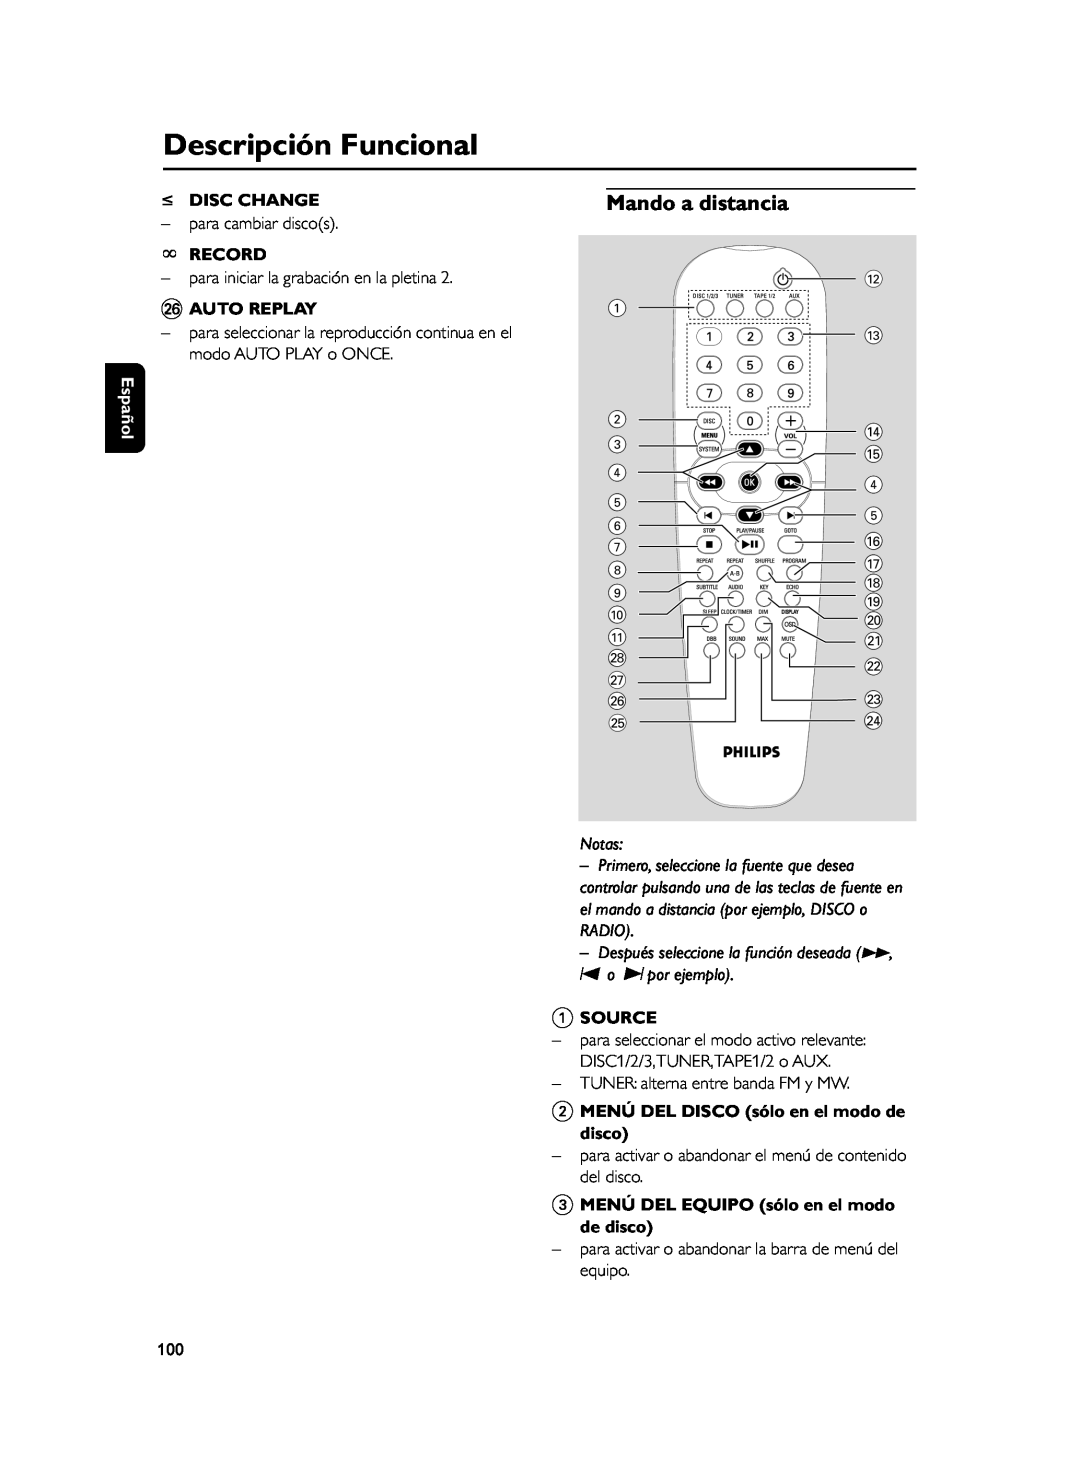 Philips FWD39 manual Mando a distancia, Descripción Funcional 